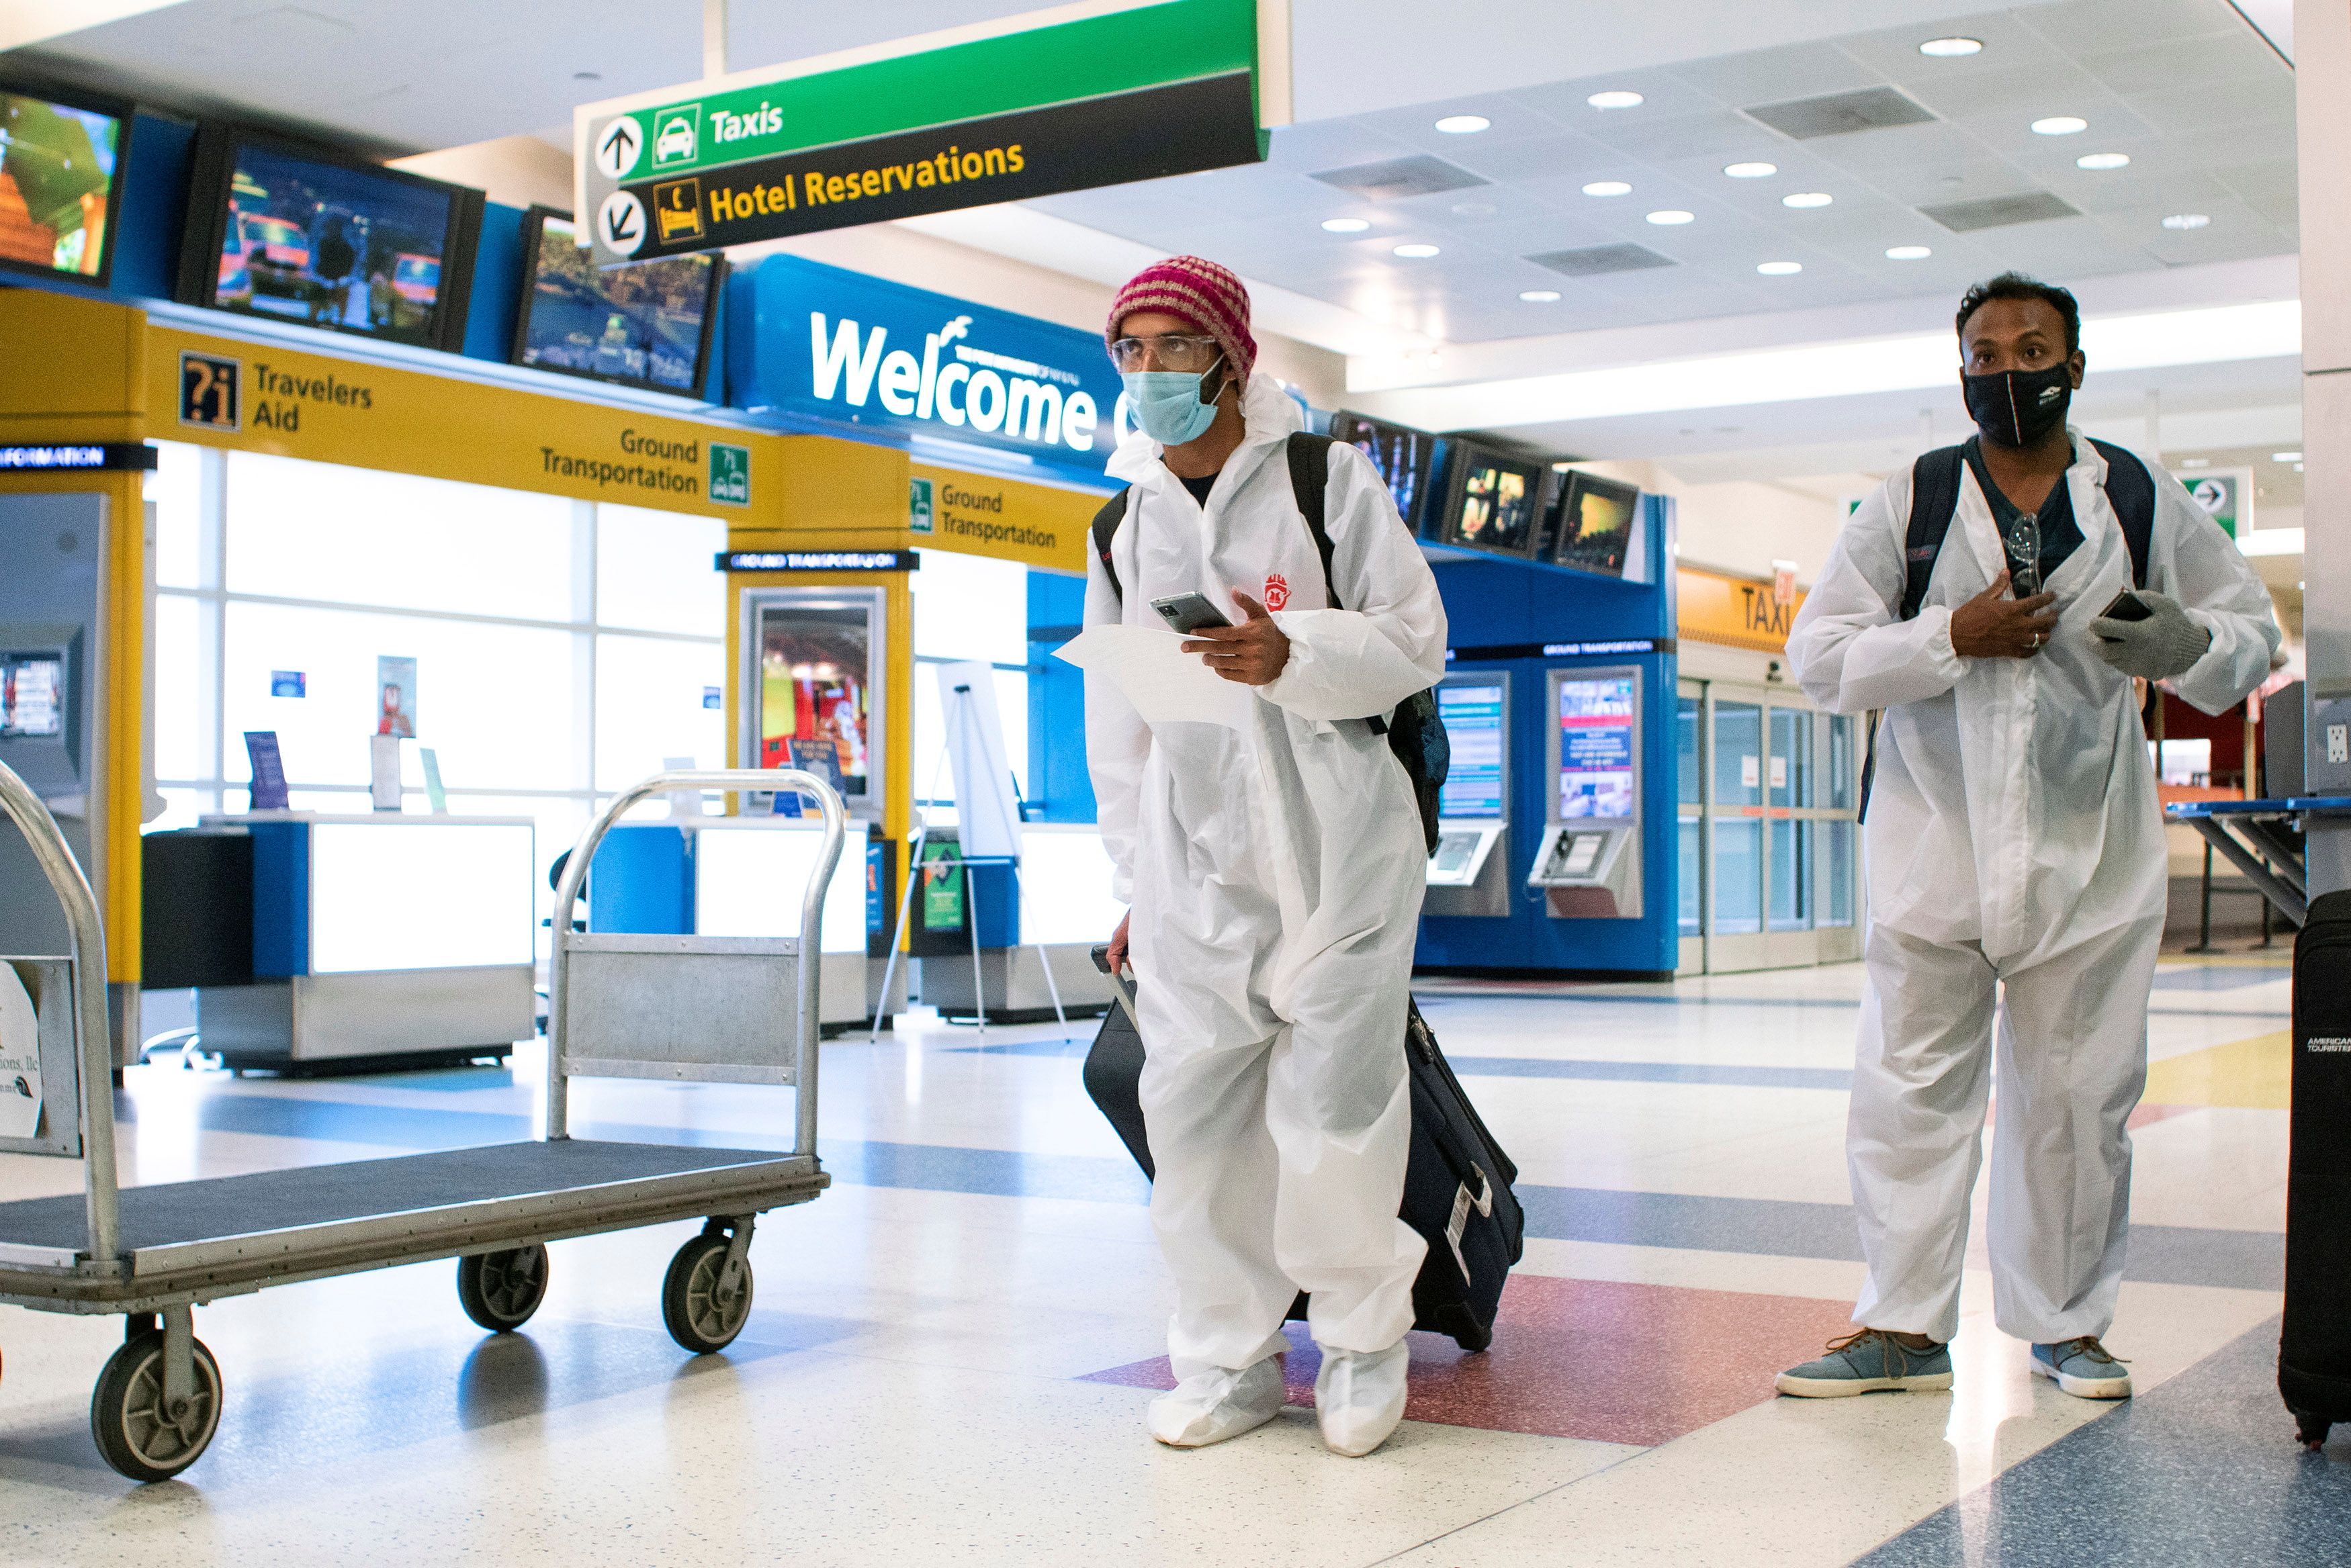 British Airways will screen JFK-bound passengers for coronavirus, New York governor says